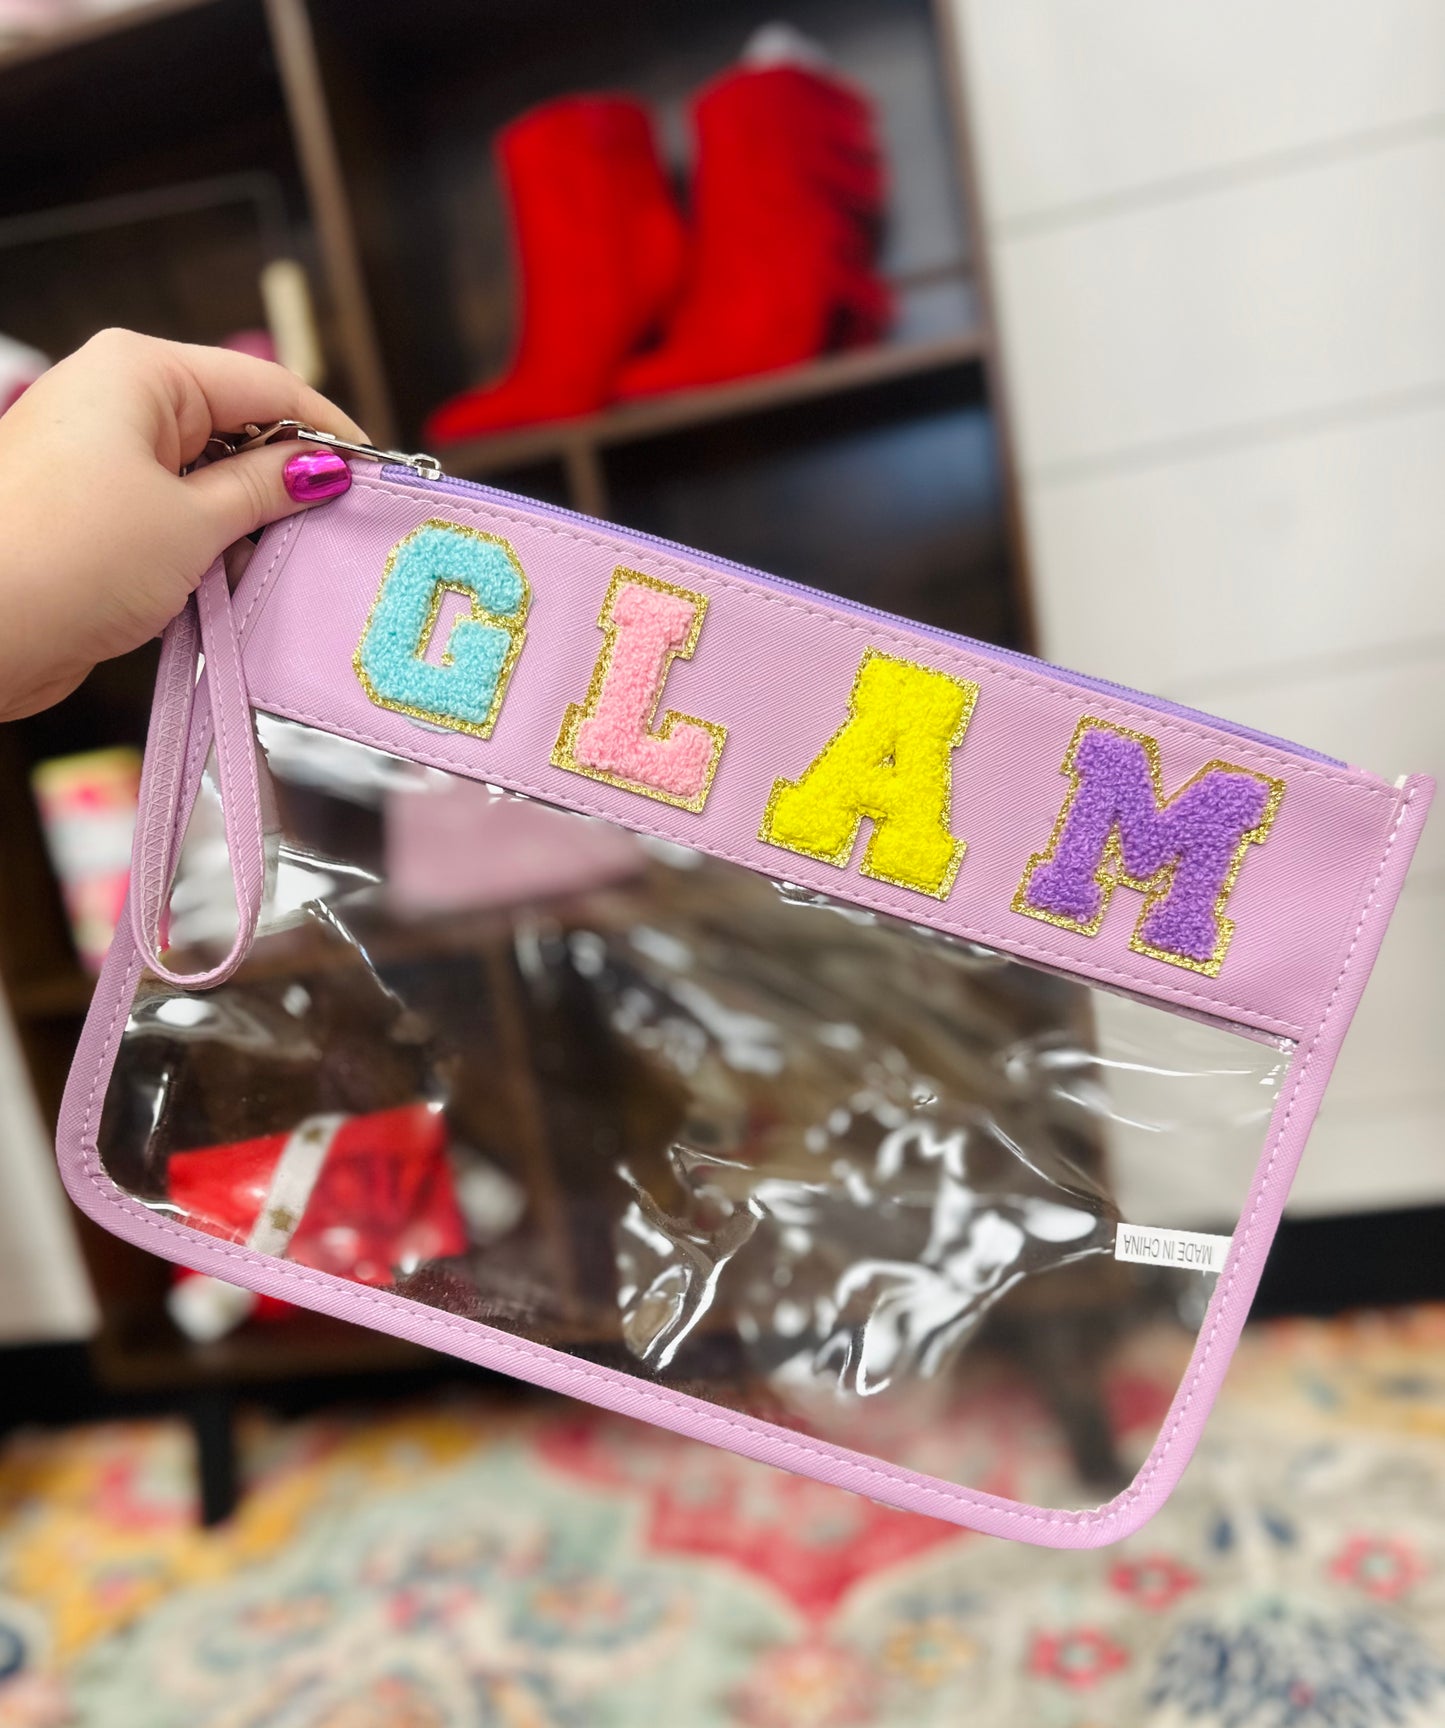 GLAM Cosmetic Bag